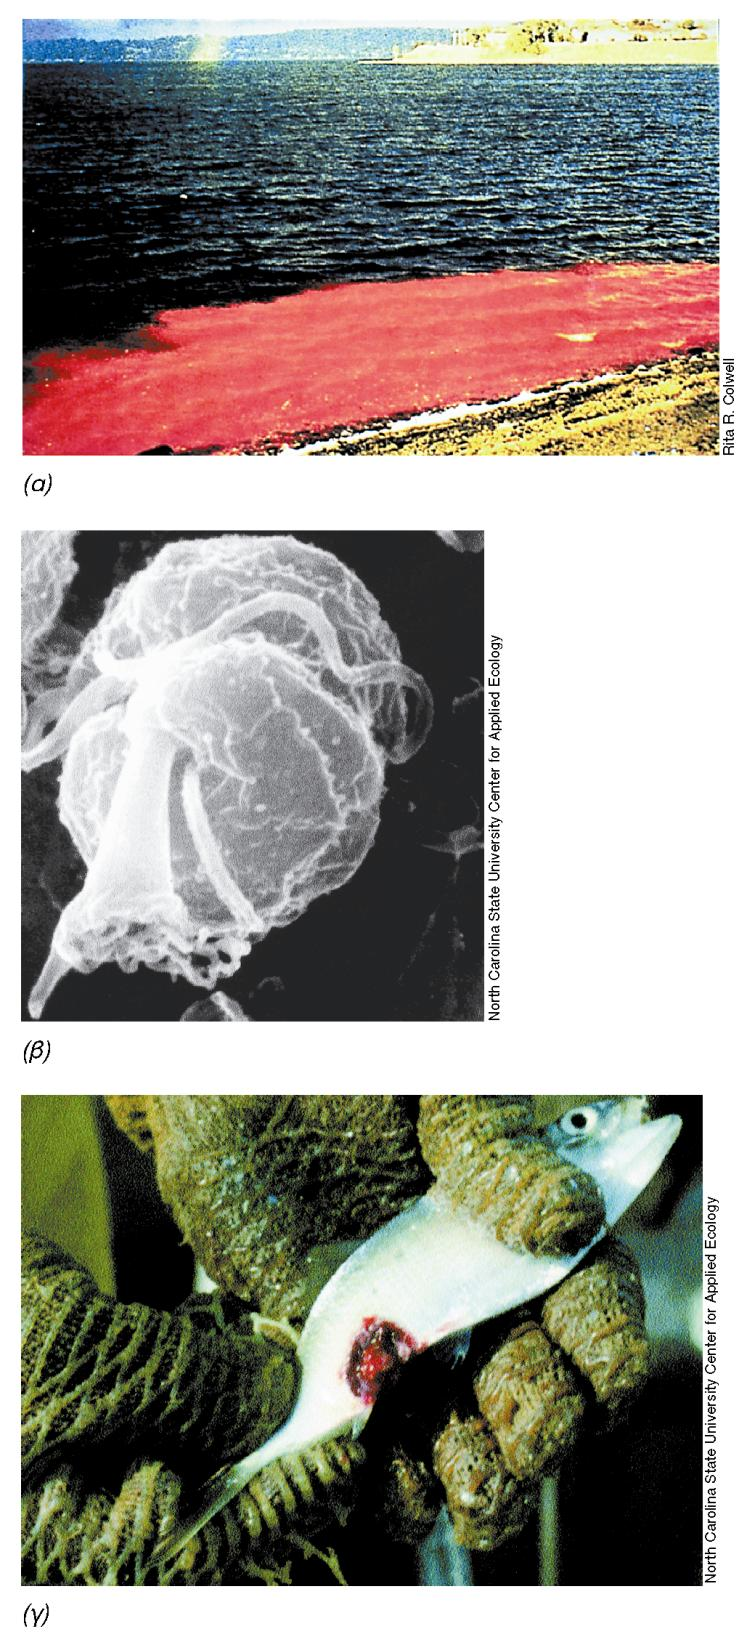 ΤΟΞΙΚΑ ΔΙΝΟΜΑΣΤΙΓΟΦΟΡΑ Ερυθρές ανθήσεις (χρωστικές) Τοξικά στον άνθρωπο, ψάρια (νευροτοξίνη) Εικόνα 14.28: Τοξικά δινομαστιγοφόρα.